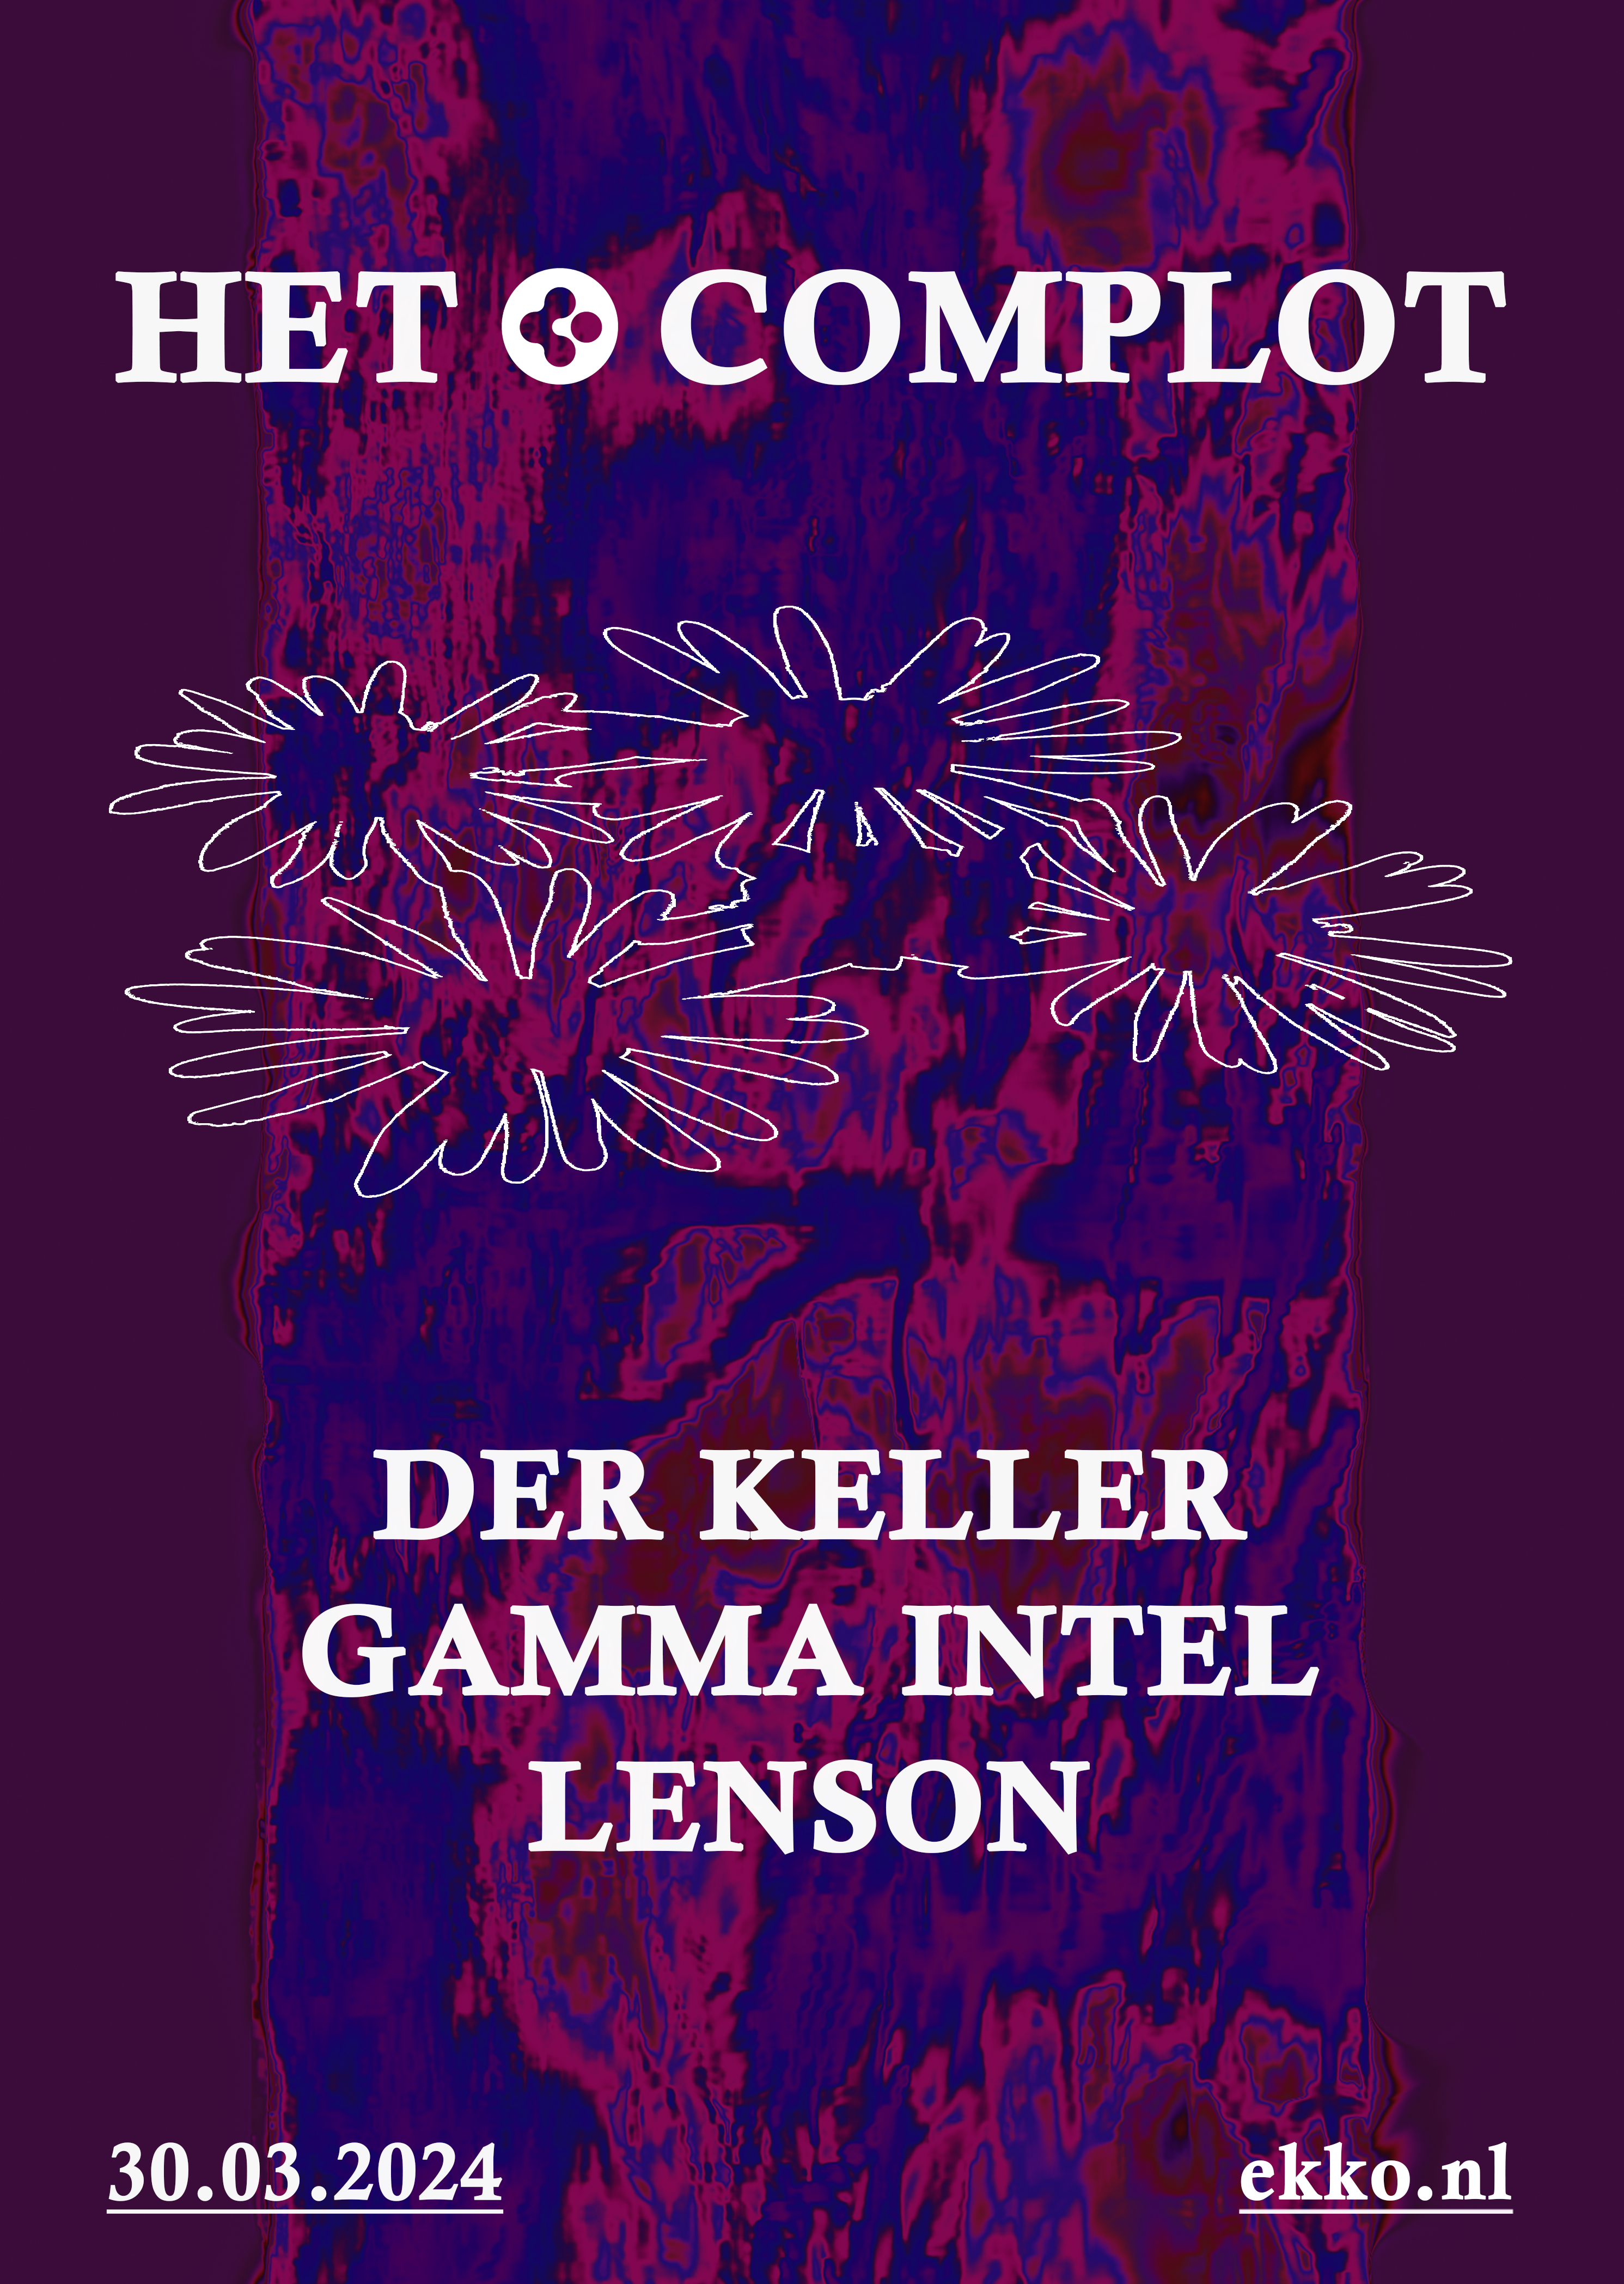 Het Complot: Der Keller, Gamma Intel, Lenson - フライヤー表